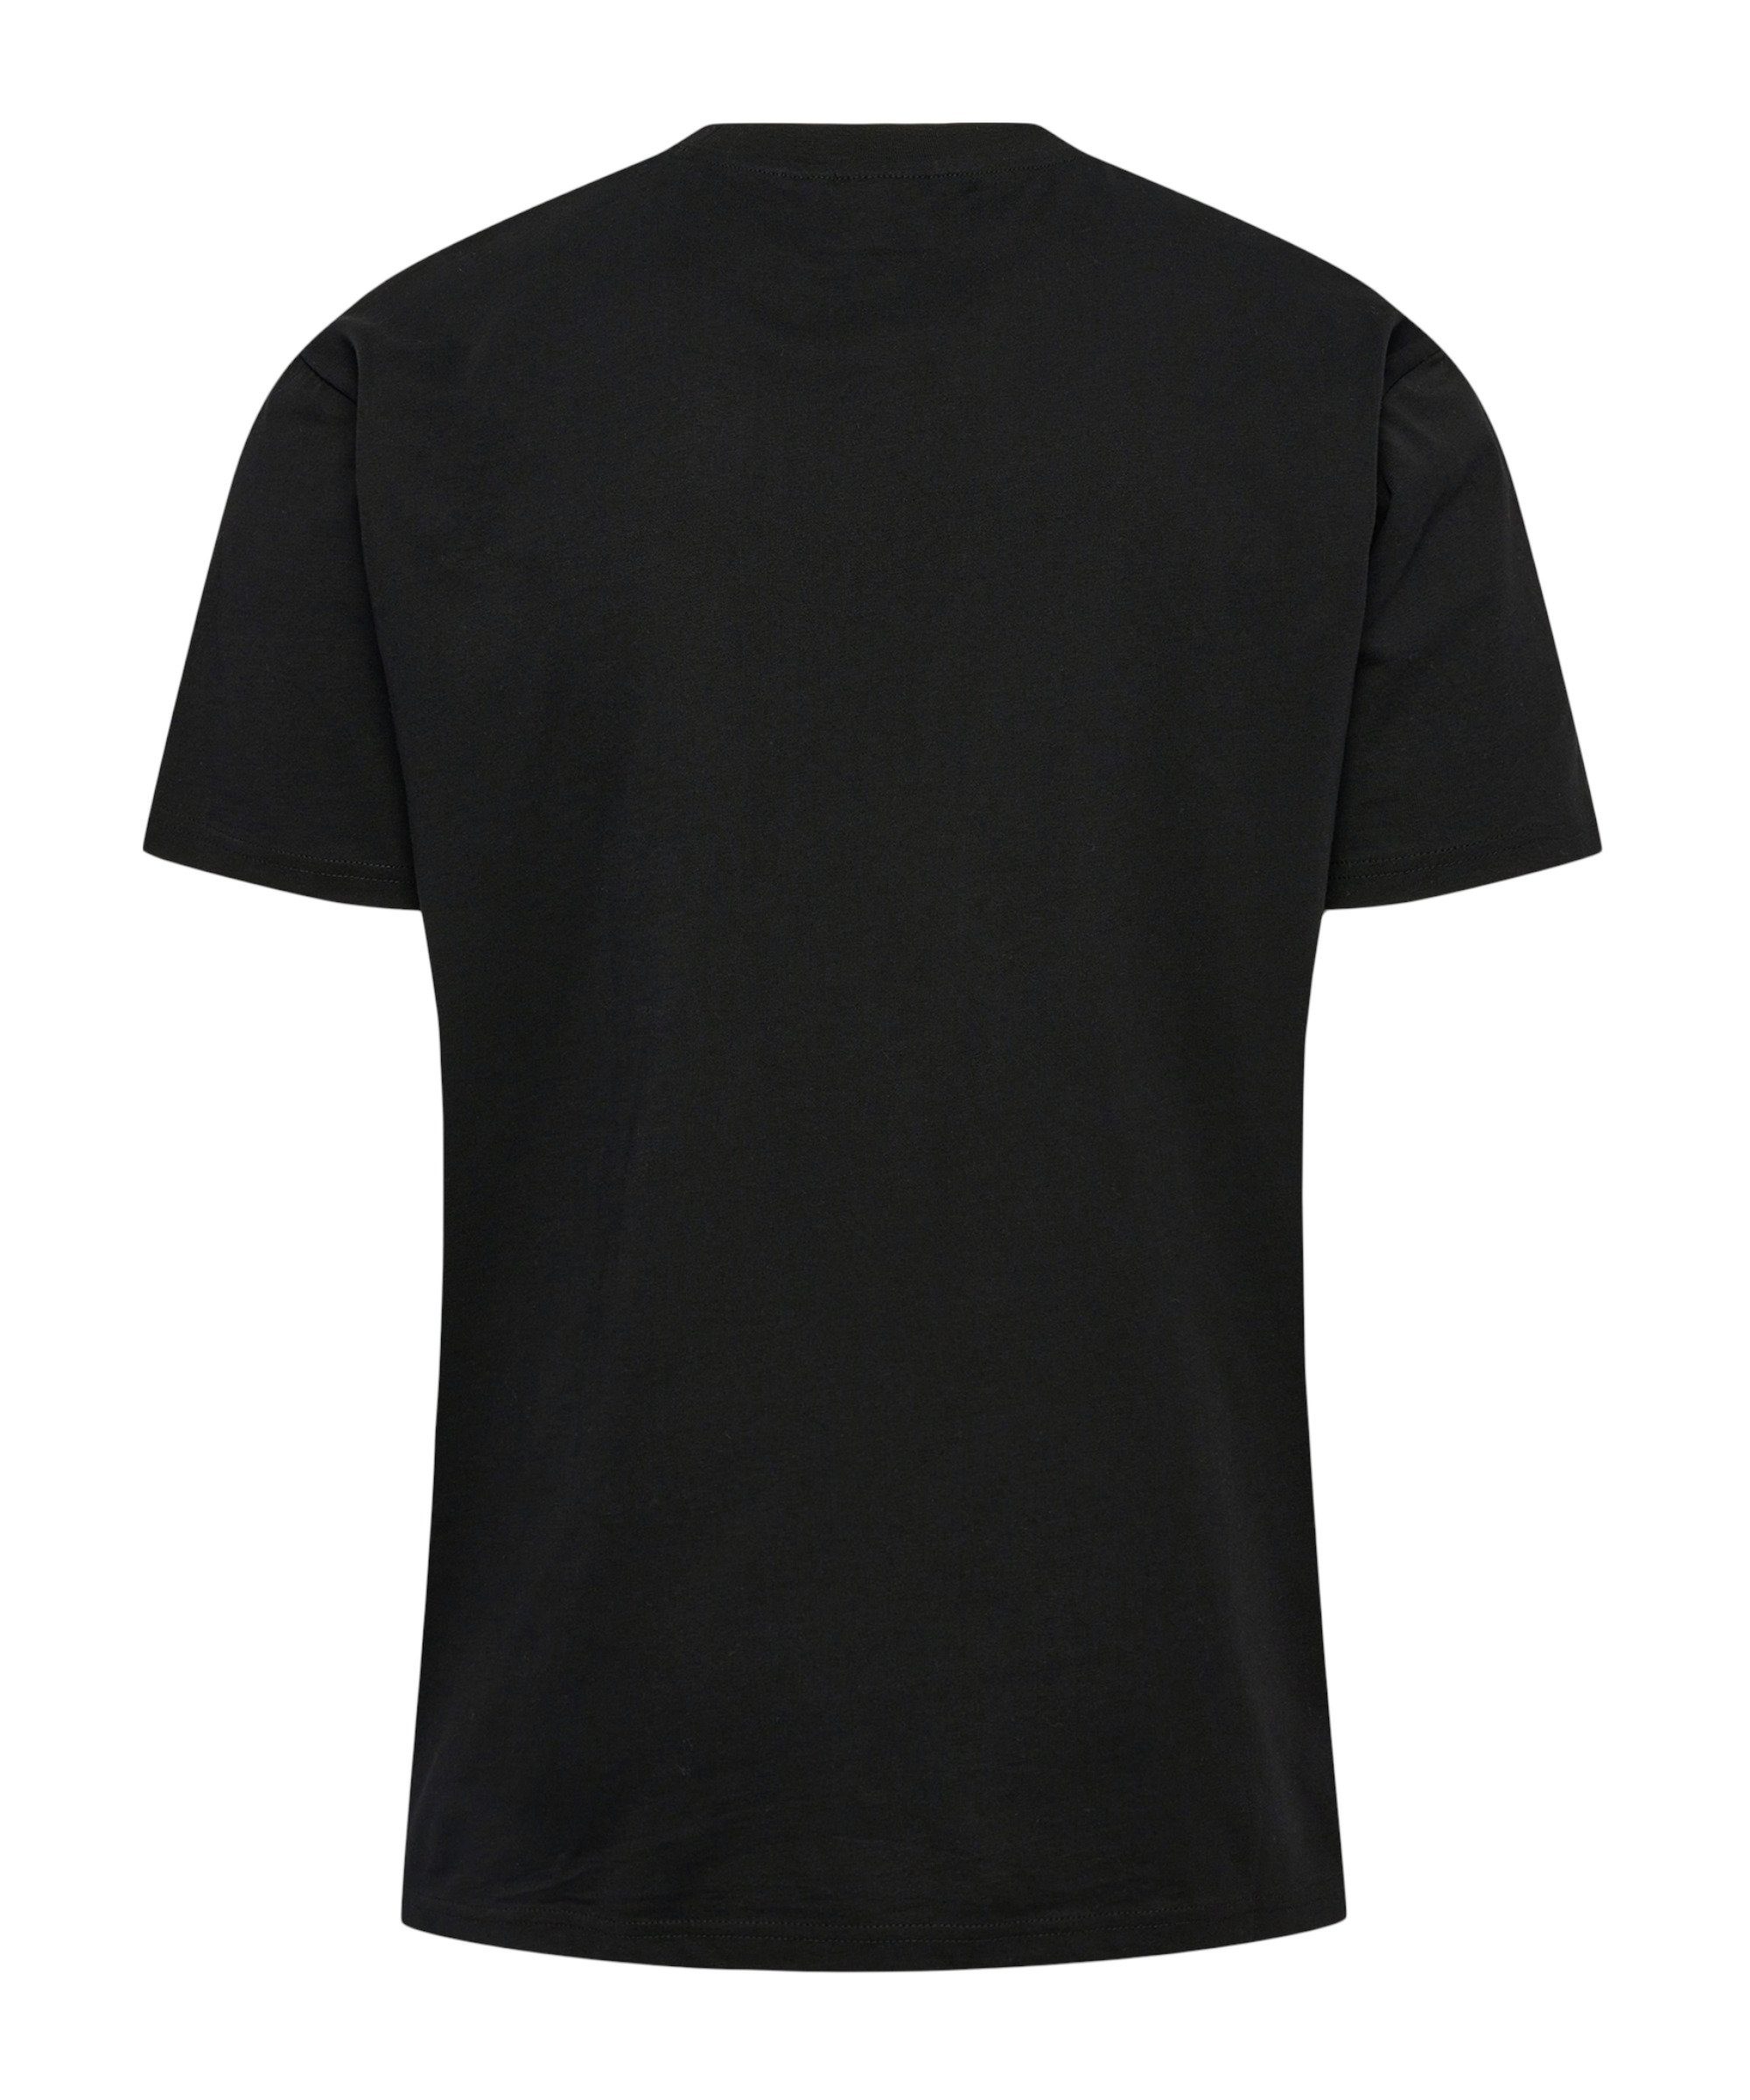 Boxy T-Shirt T-Shirt hmlLP10 default schwarz hummel